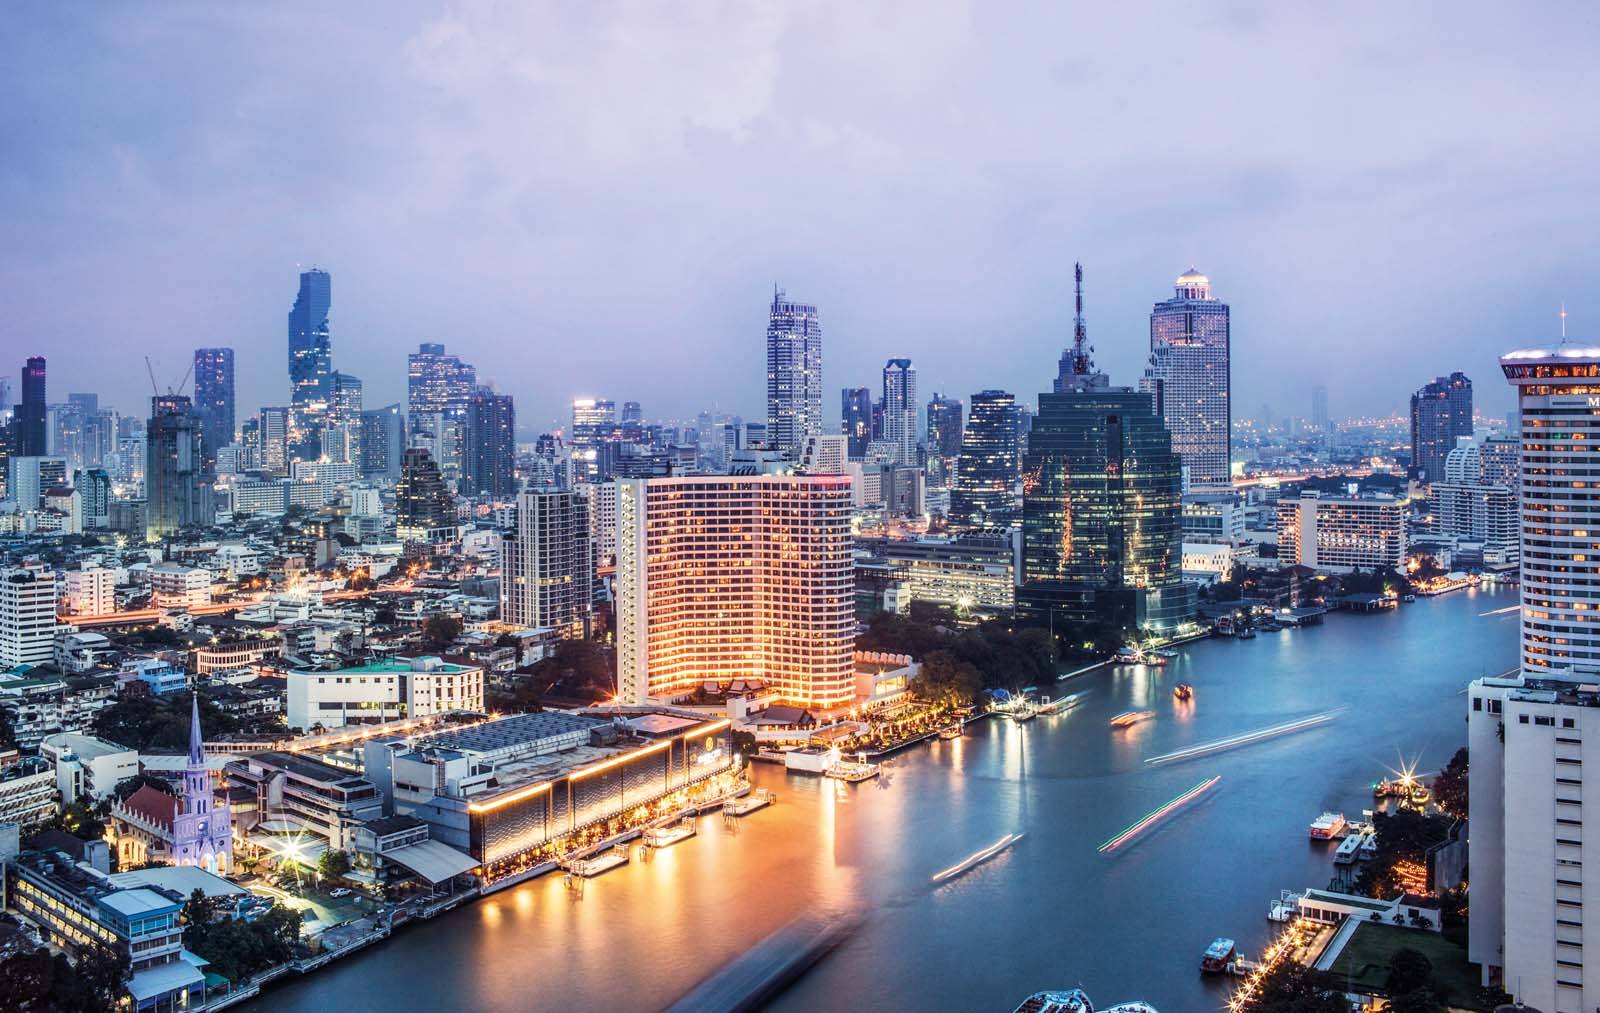 Bangkok's riverfront has undergone amazing revitalisation